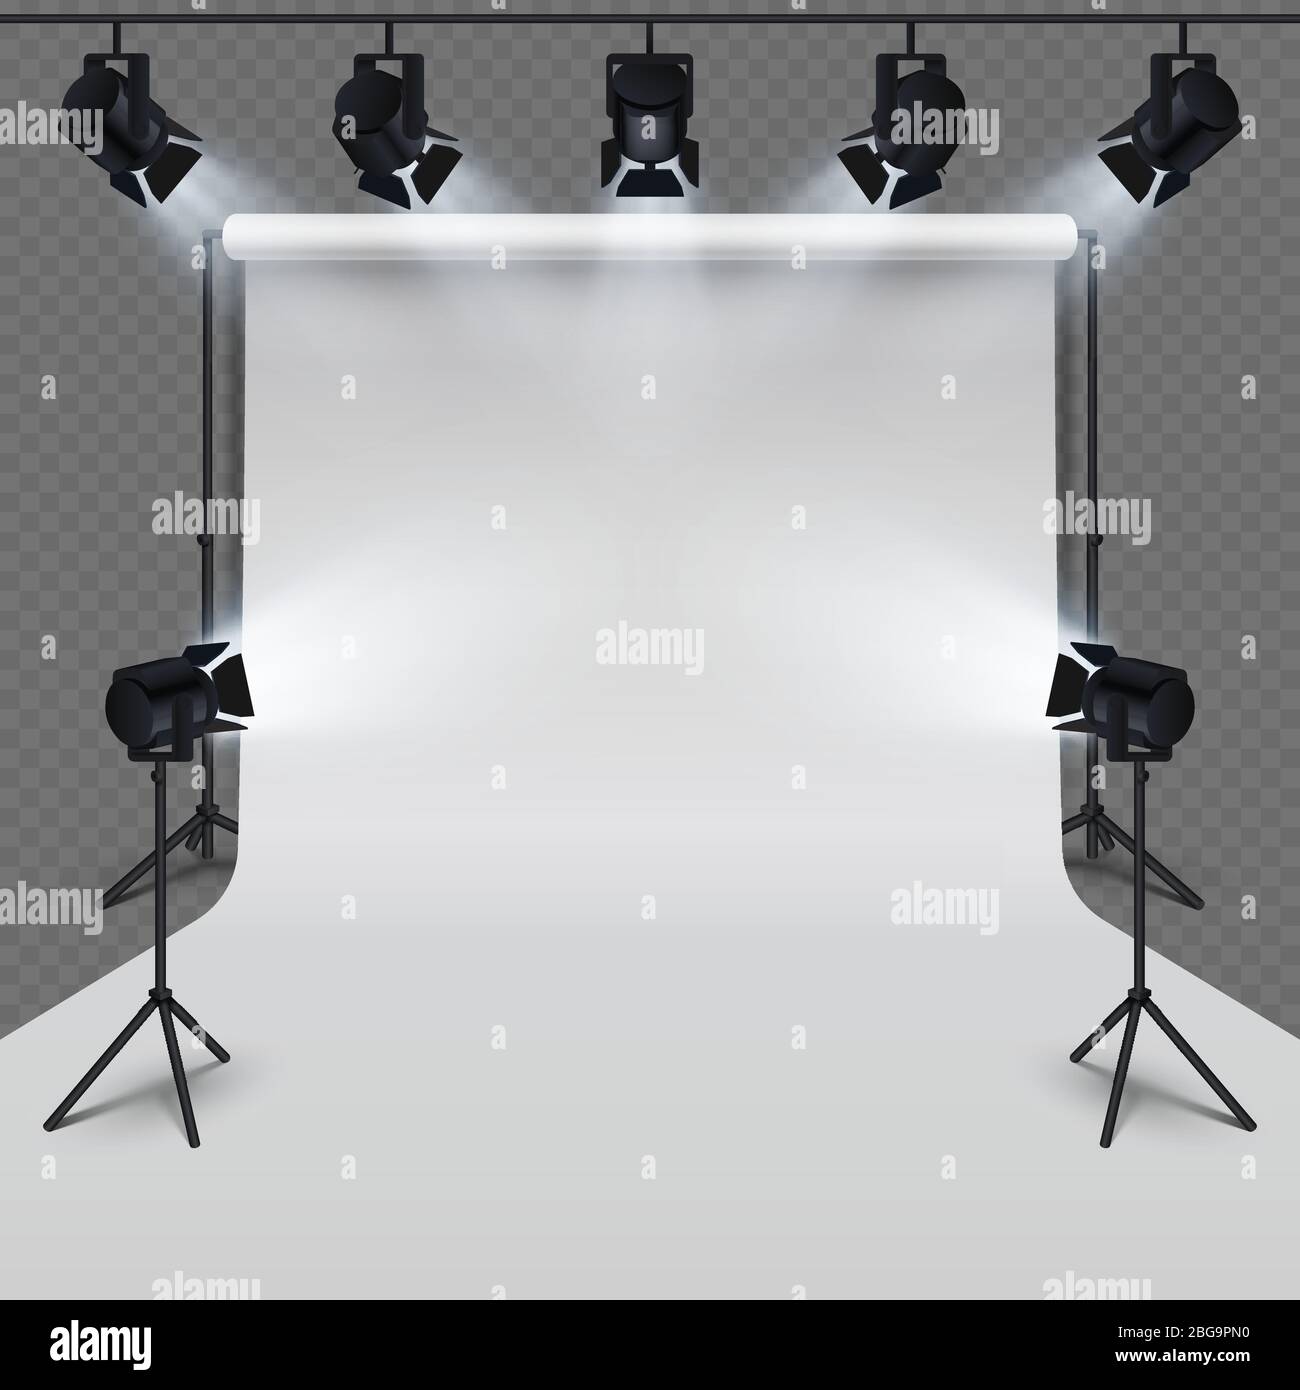 Equipement d'éclairage et studio de photographie professionnel blanc blanc isolé sur fond transparent. Illustration vectorielle Illustration de Vecteur